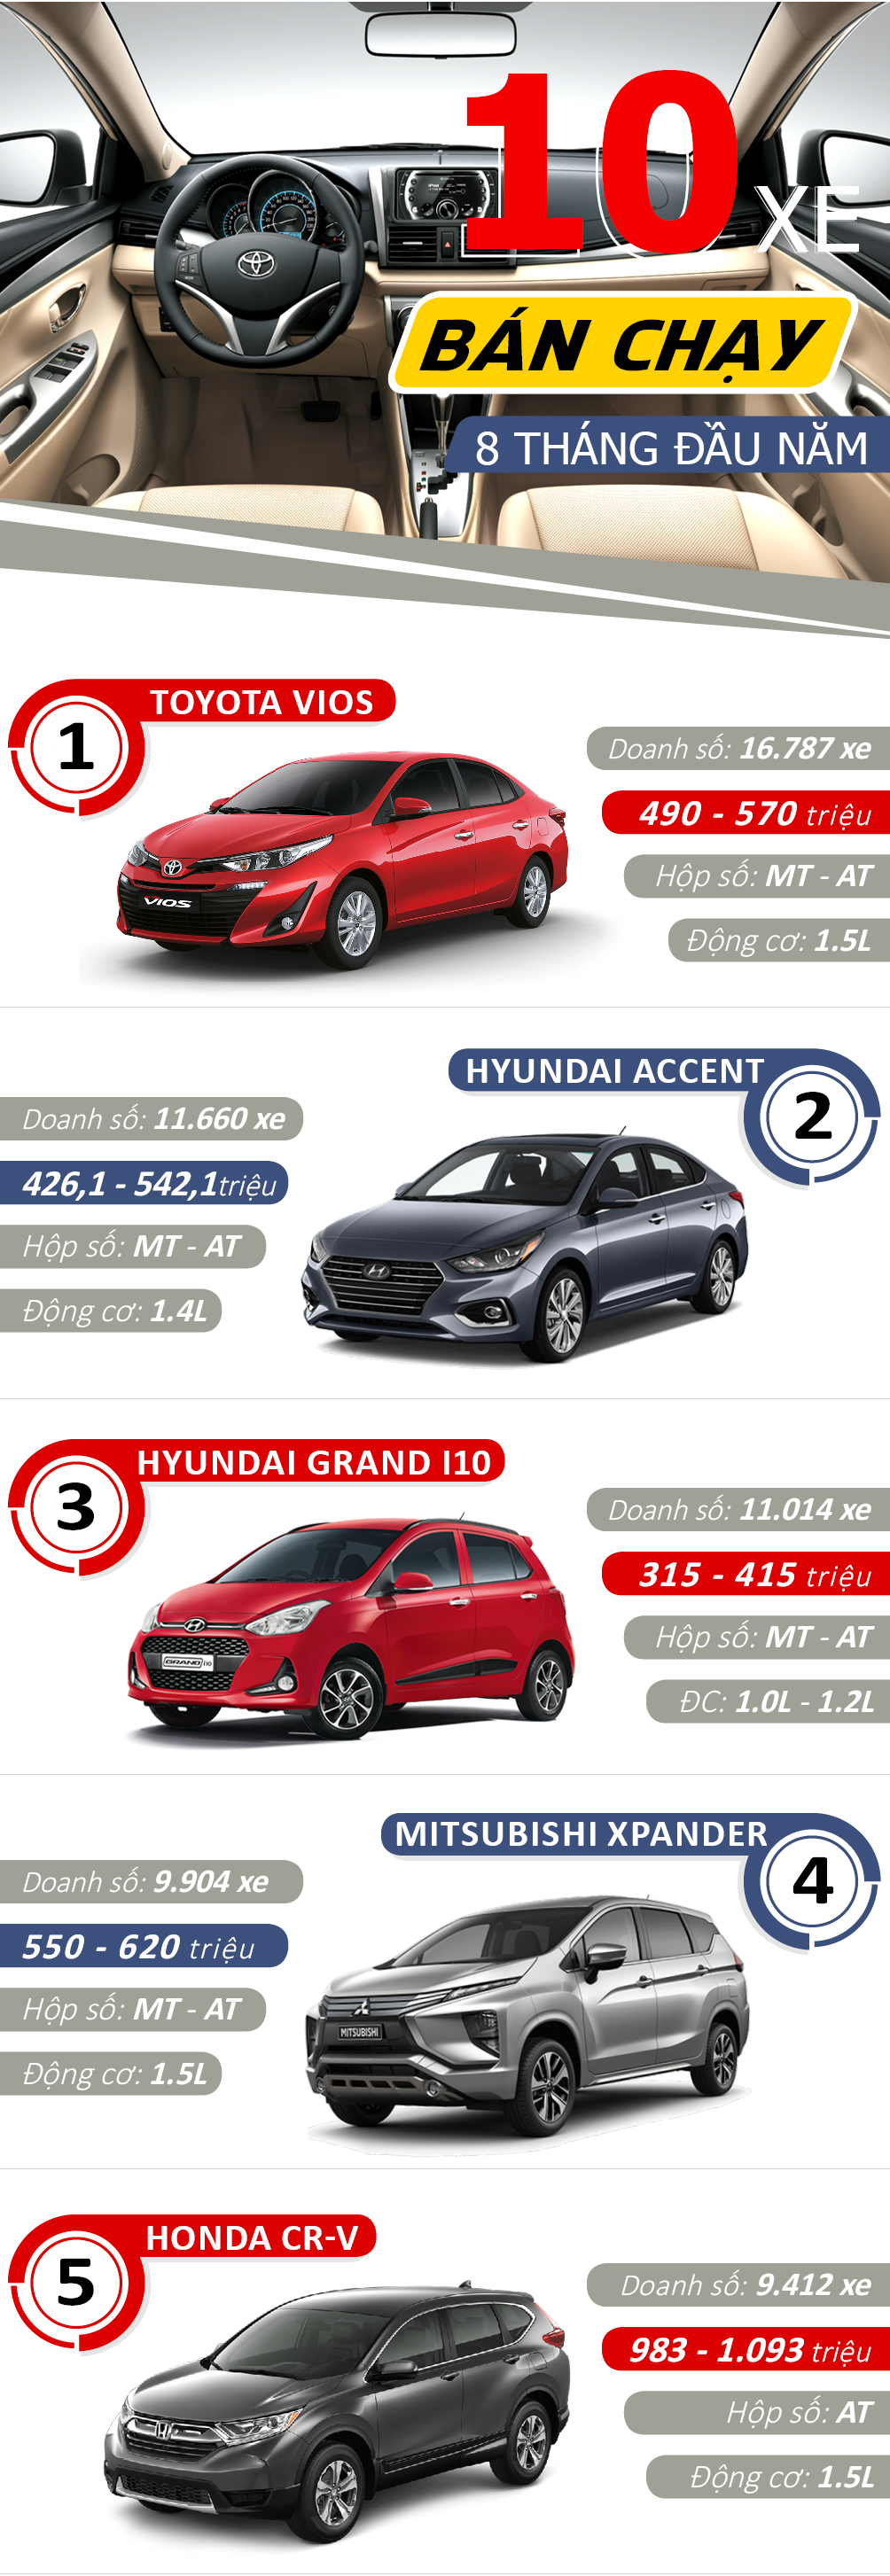 Infographic: Những mẫu ô tô bán chạy nhất Việt Nam - 1